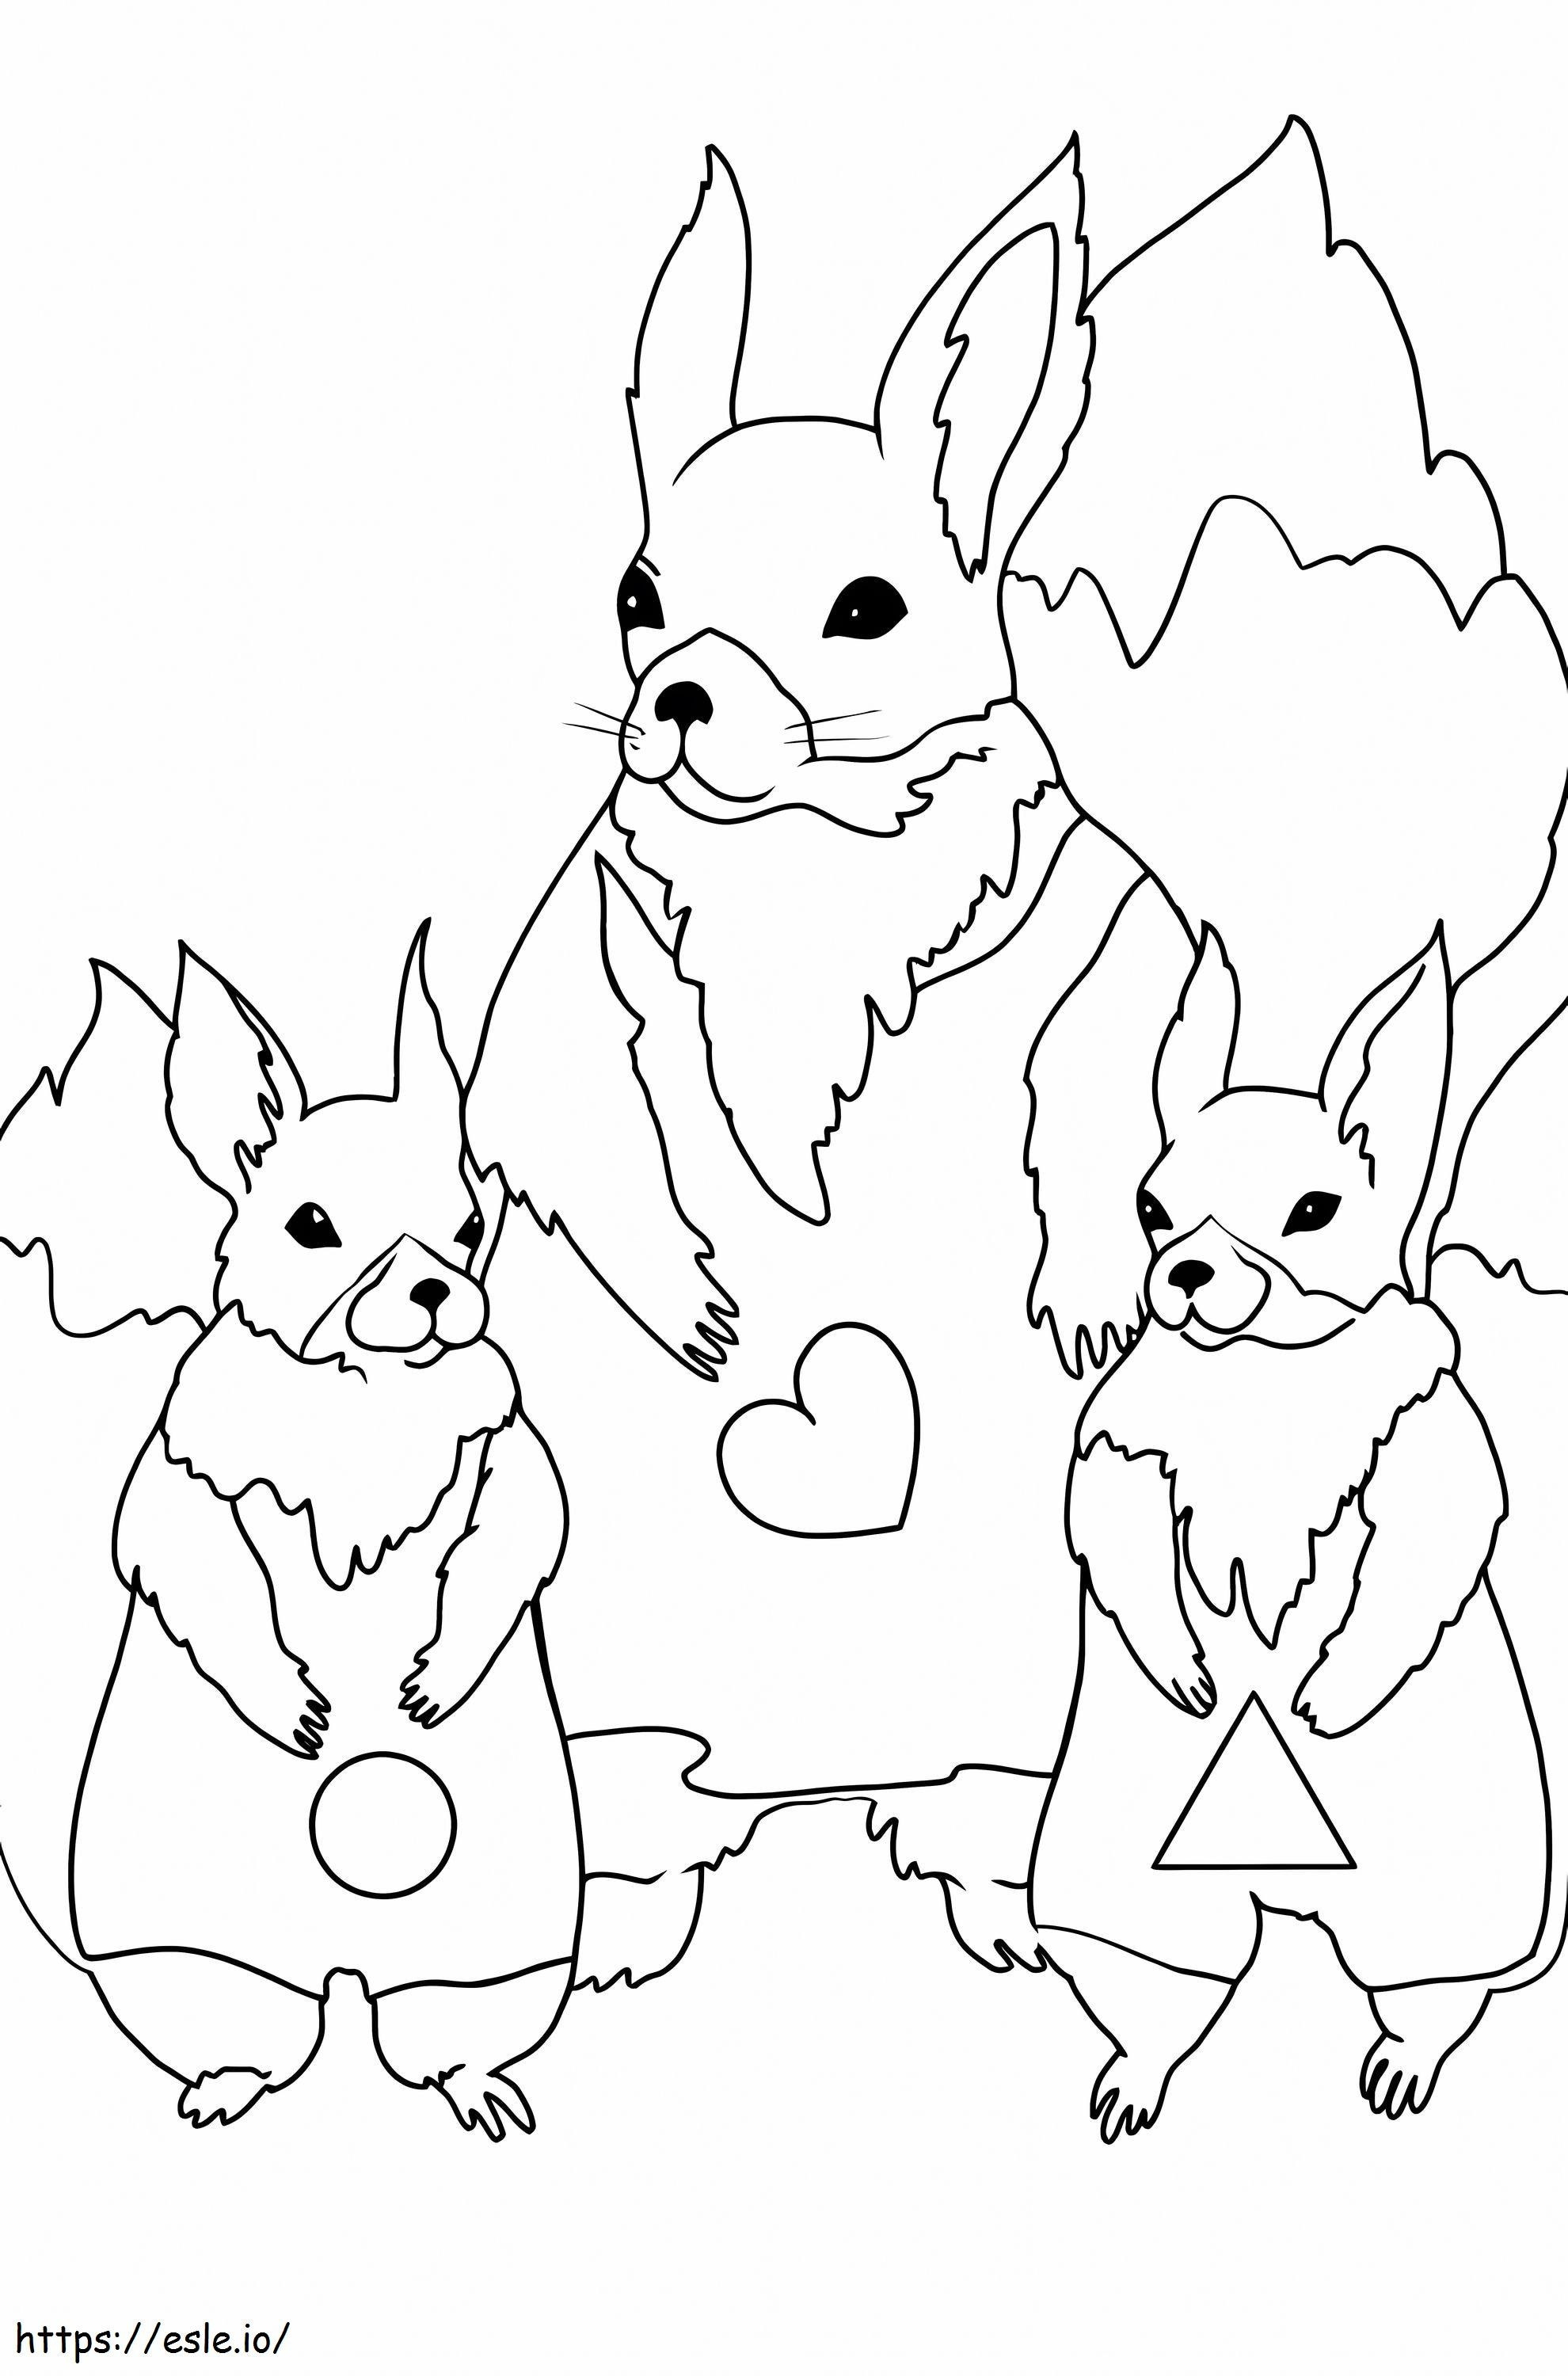 İlkbaharda Çizgi Film Aile Tavşanı boyama